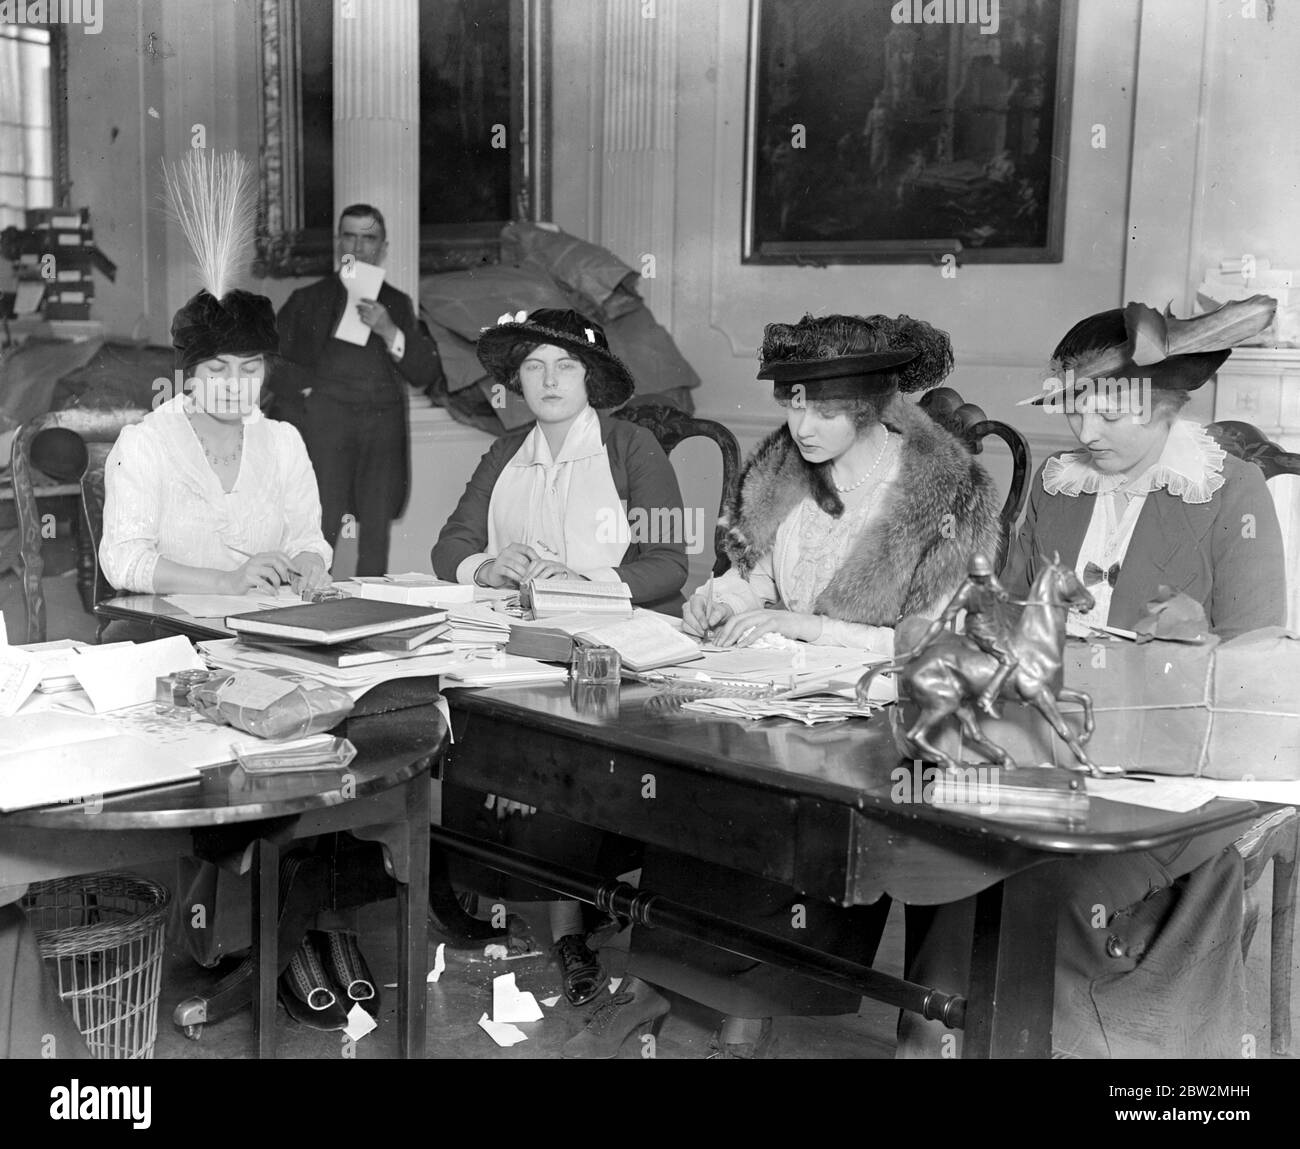 La comtesse Zia et Nada Torby collectent des fonds pour des foulards et des chaussettes pour des soldats. 1914 - 1918 Banque D'Images